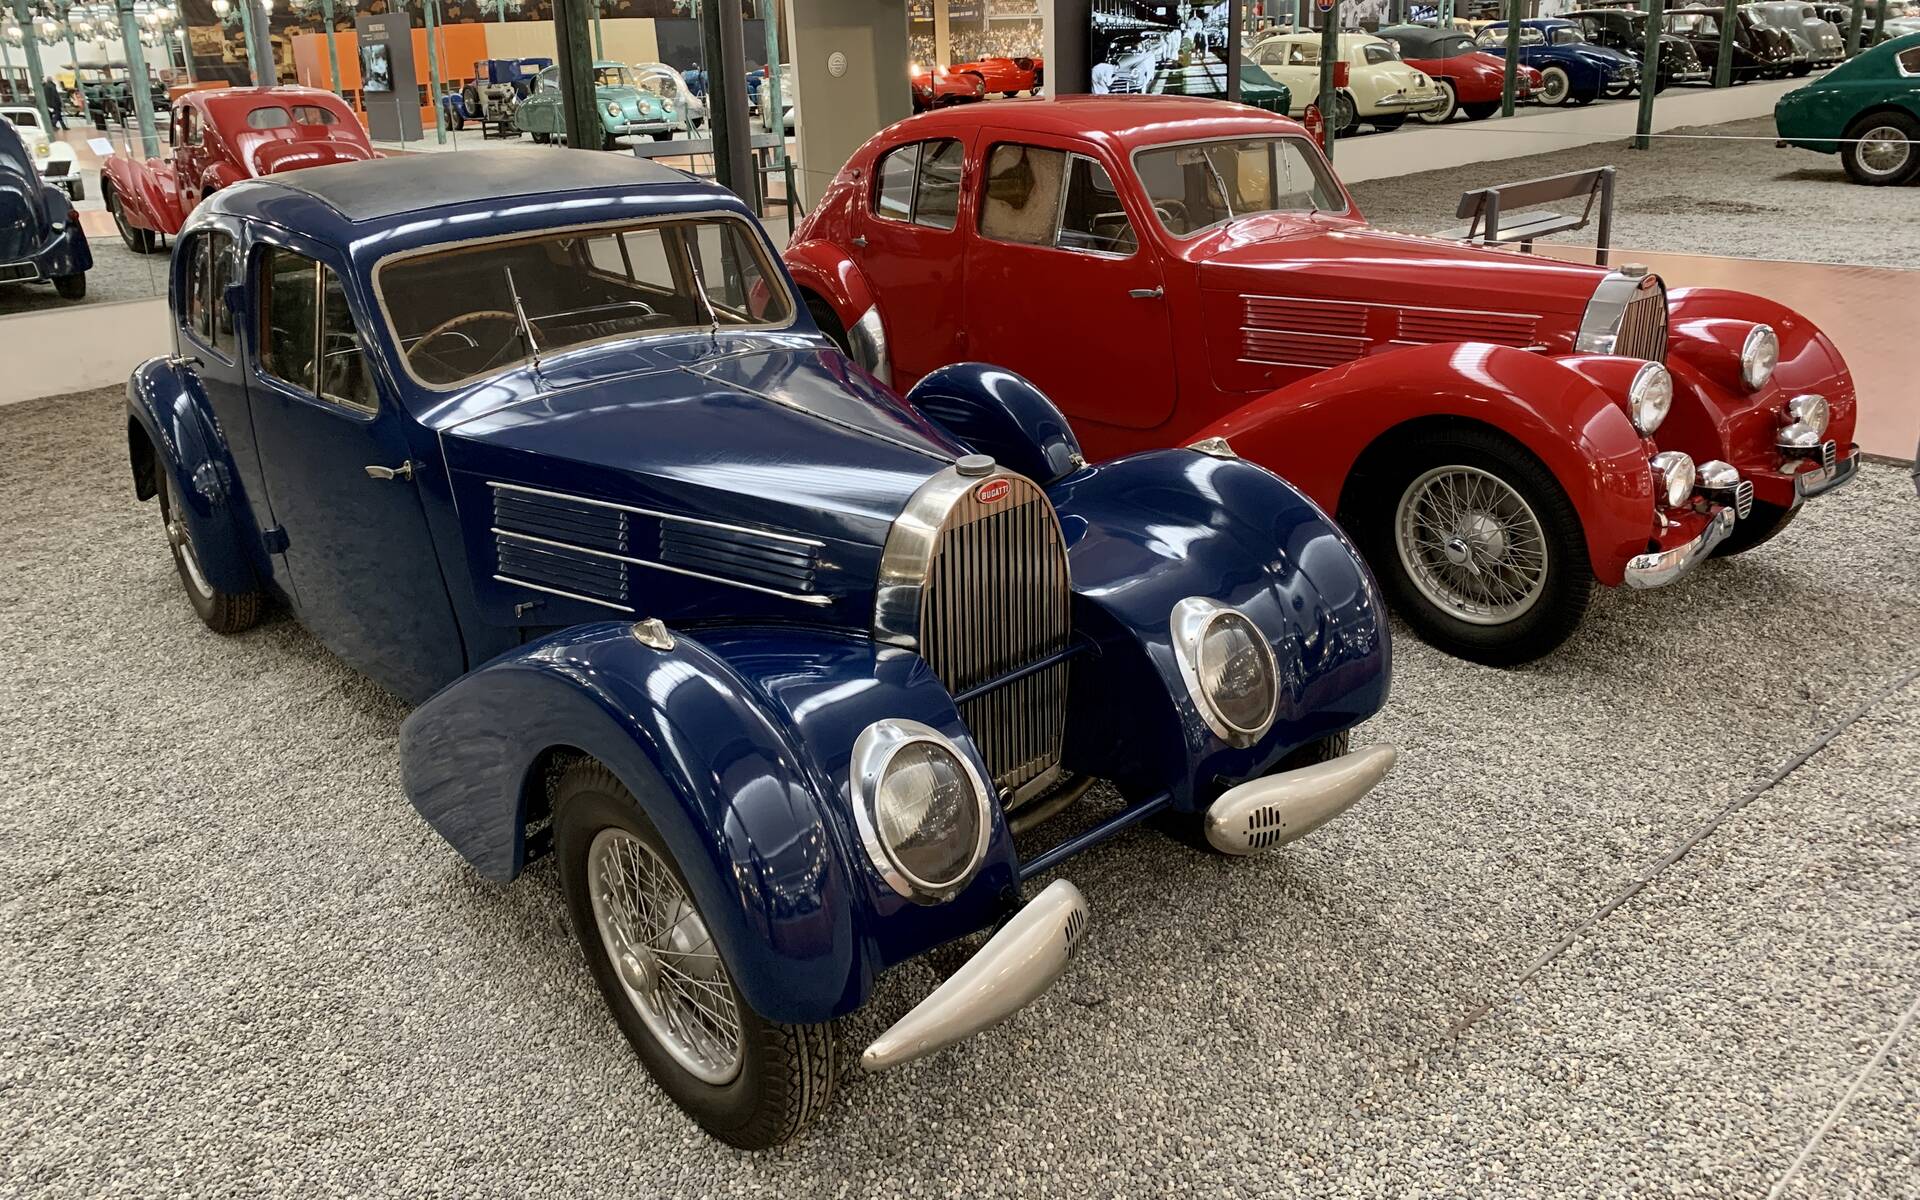 En photos : une centaine de Bugatti réunies dans un même musée 503066-en-photos-des-dizaines-de-bugatti-reunies-dans-un-meme-musee